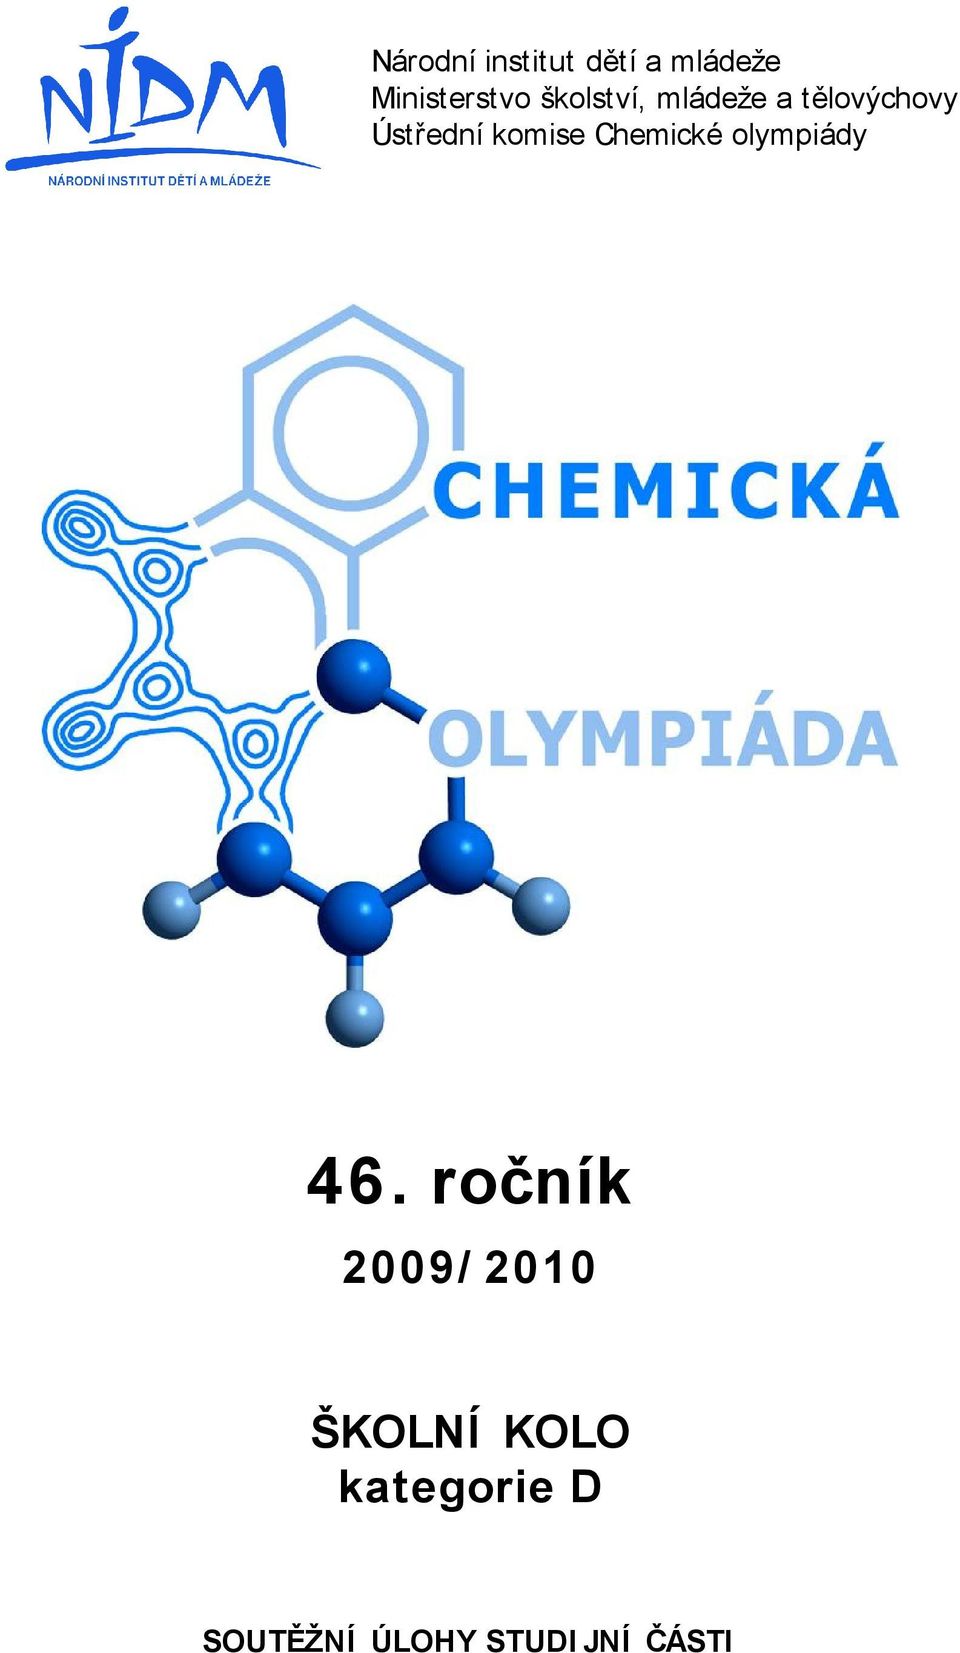 středníkomise Chemické olympiá dy 46.